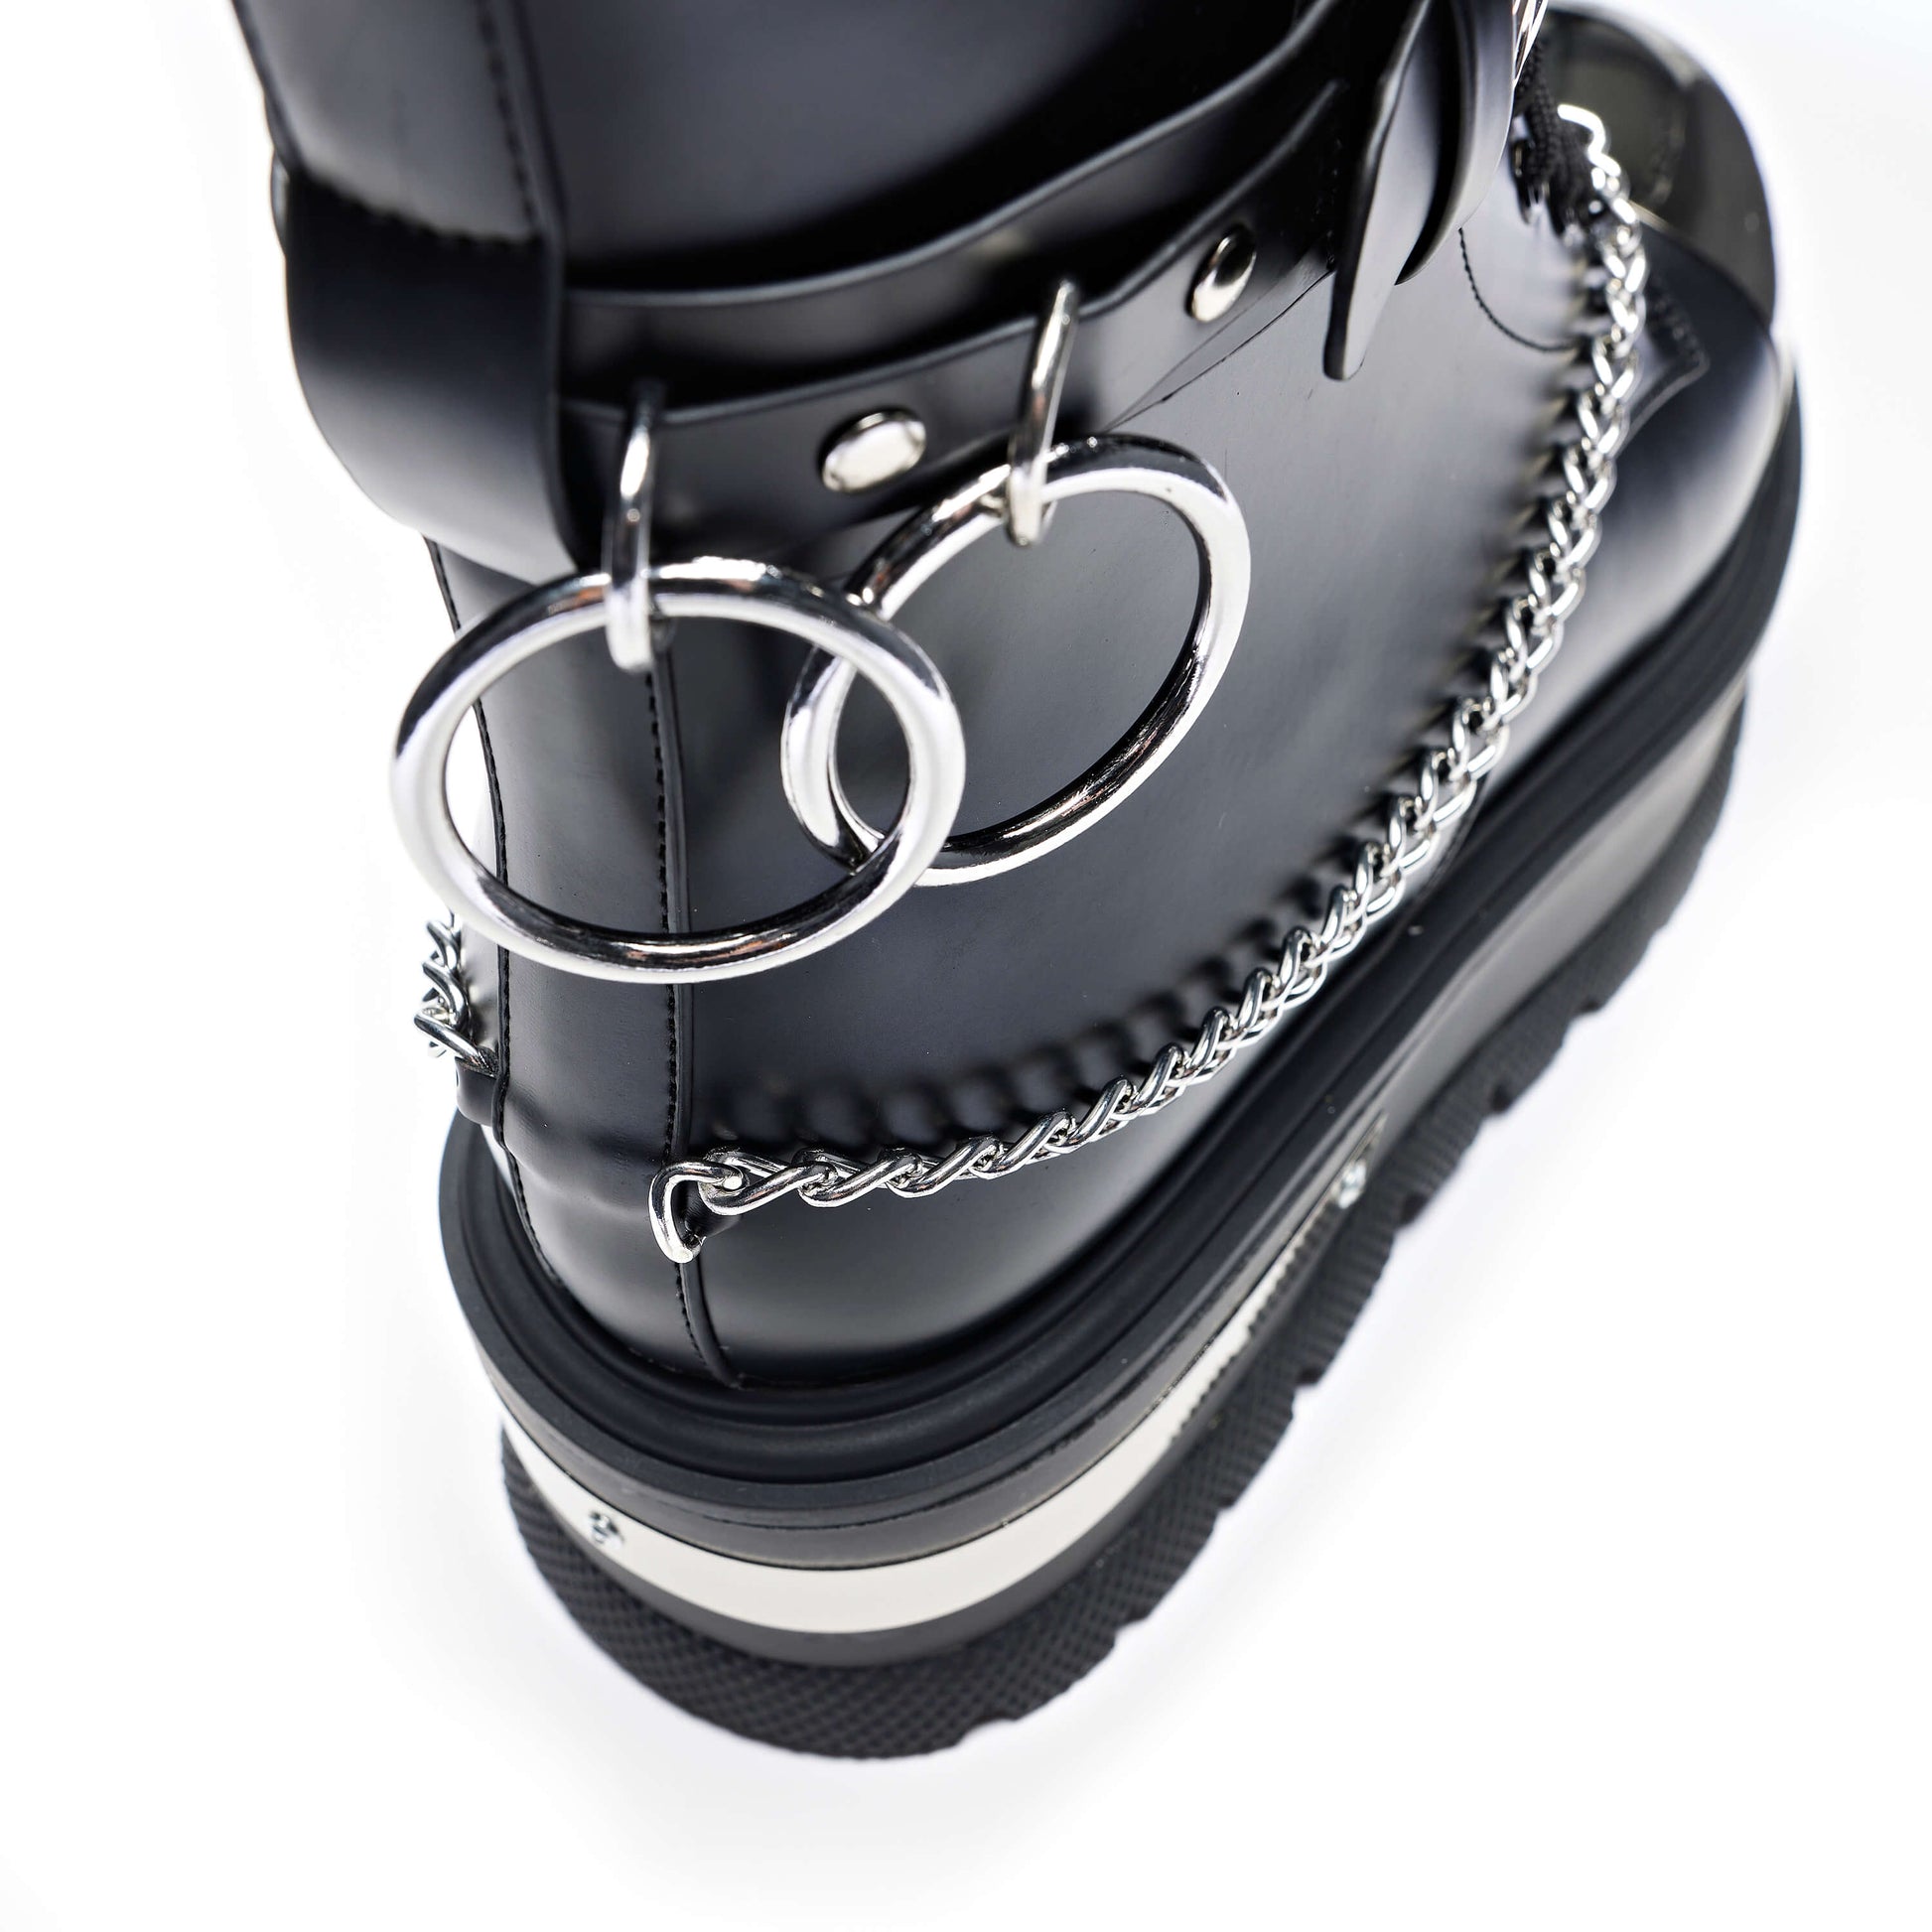 Borin Men's Hardware Platform Boots - Ankle Boots - KOI Footwear - Black - Back Detail